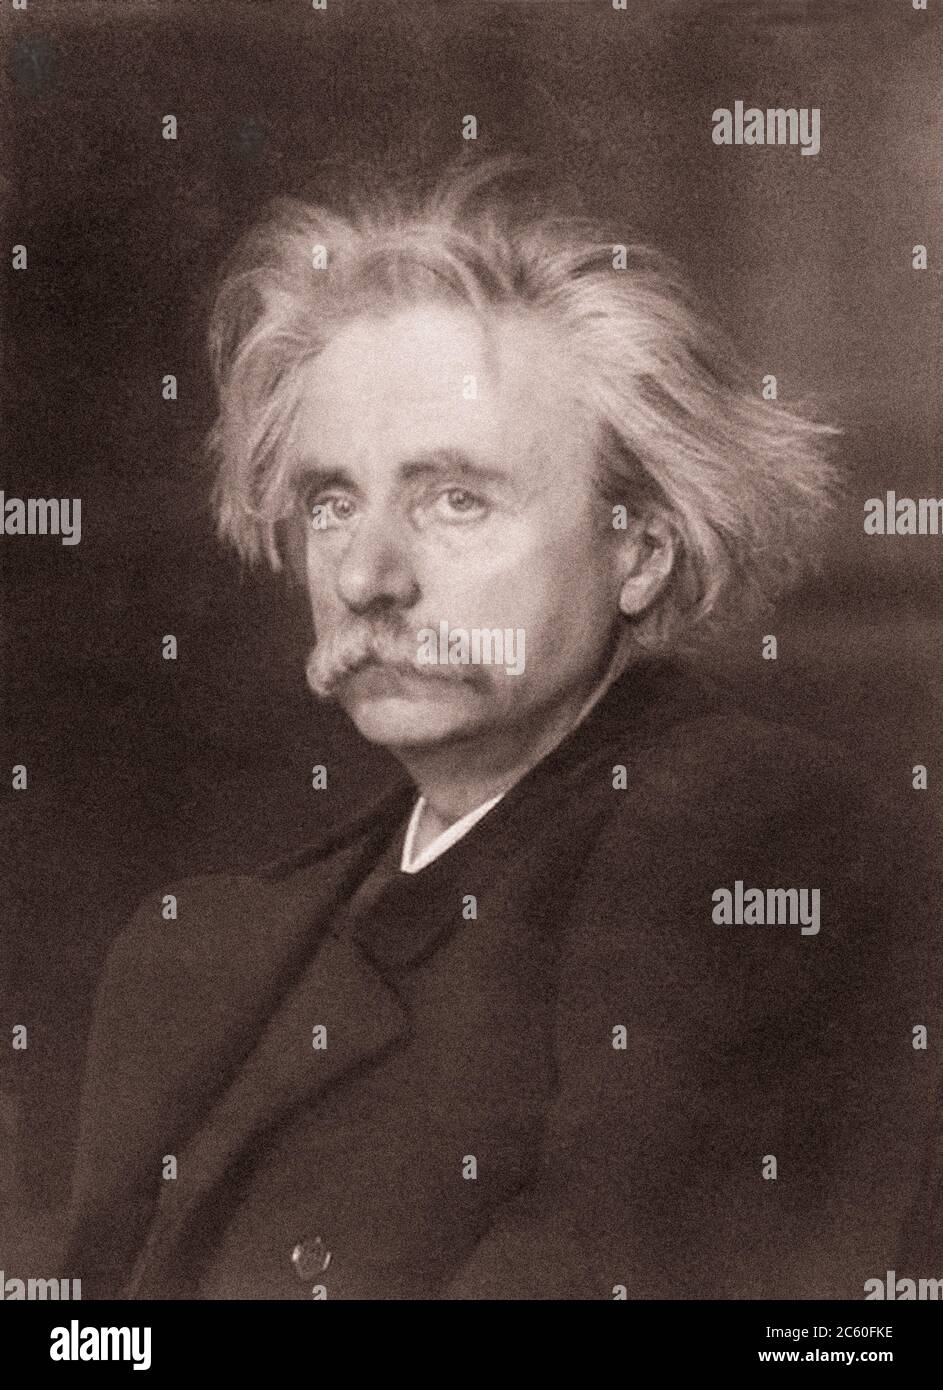 Edvard Hagerup Grieg (1843 - 1907) war ein norwegischer Komponist der Romantik, Musikfigur, Pianist und Dirigent. Grieg's Arbeit war Einfluss Stockfoto